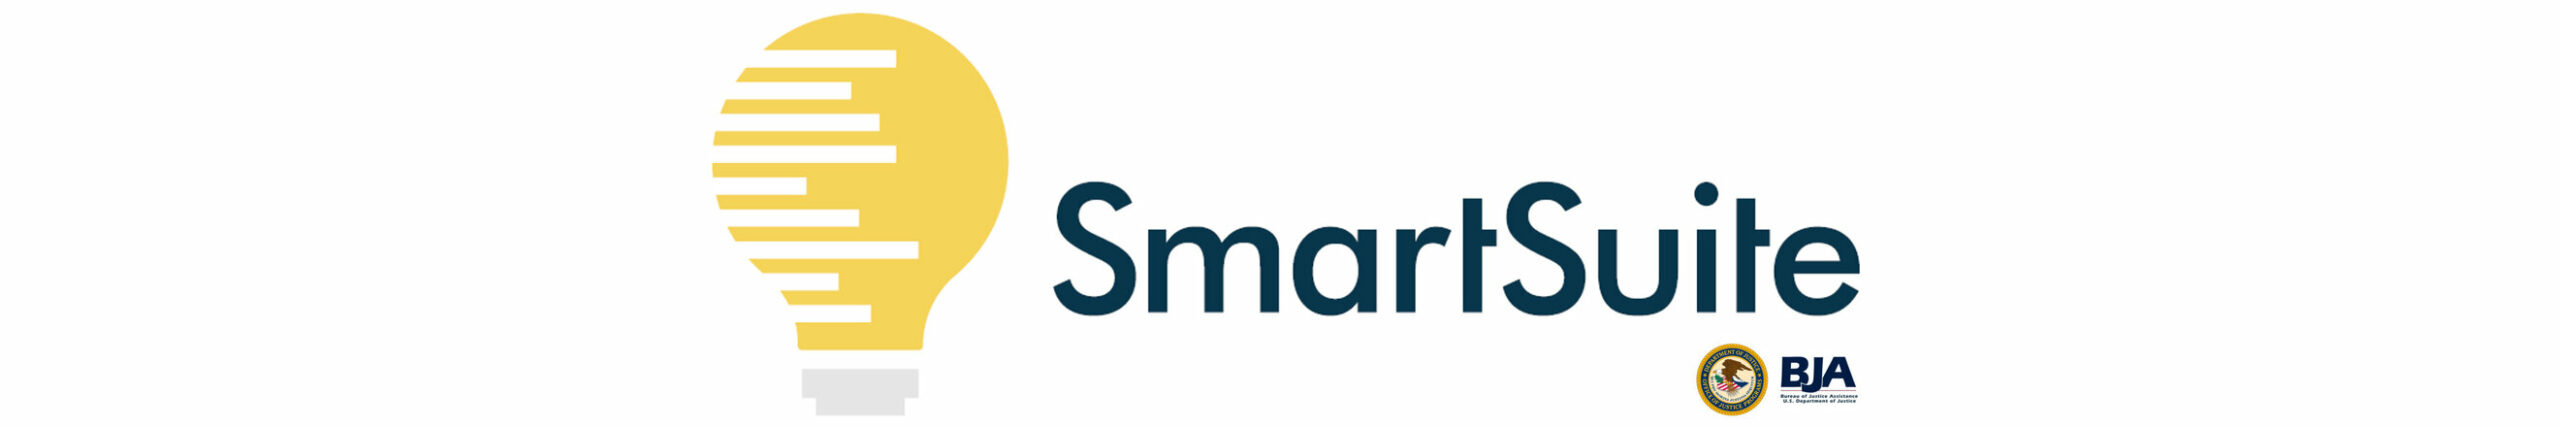 Lightbulb smartsuite logo